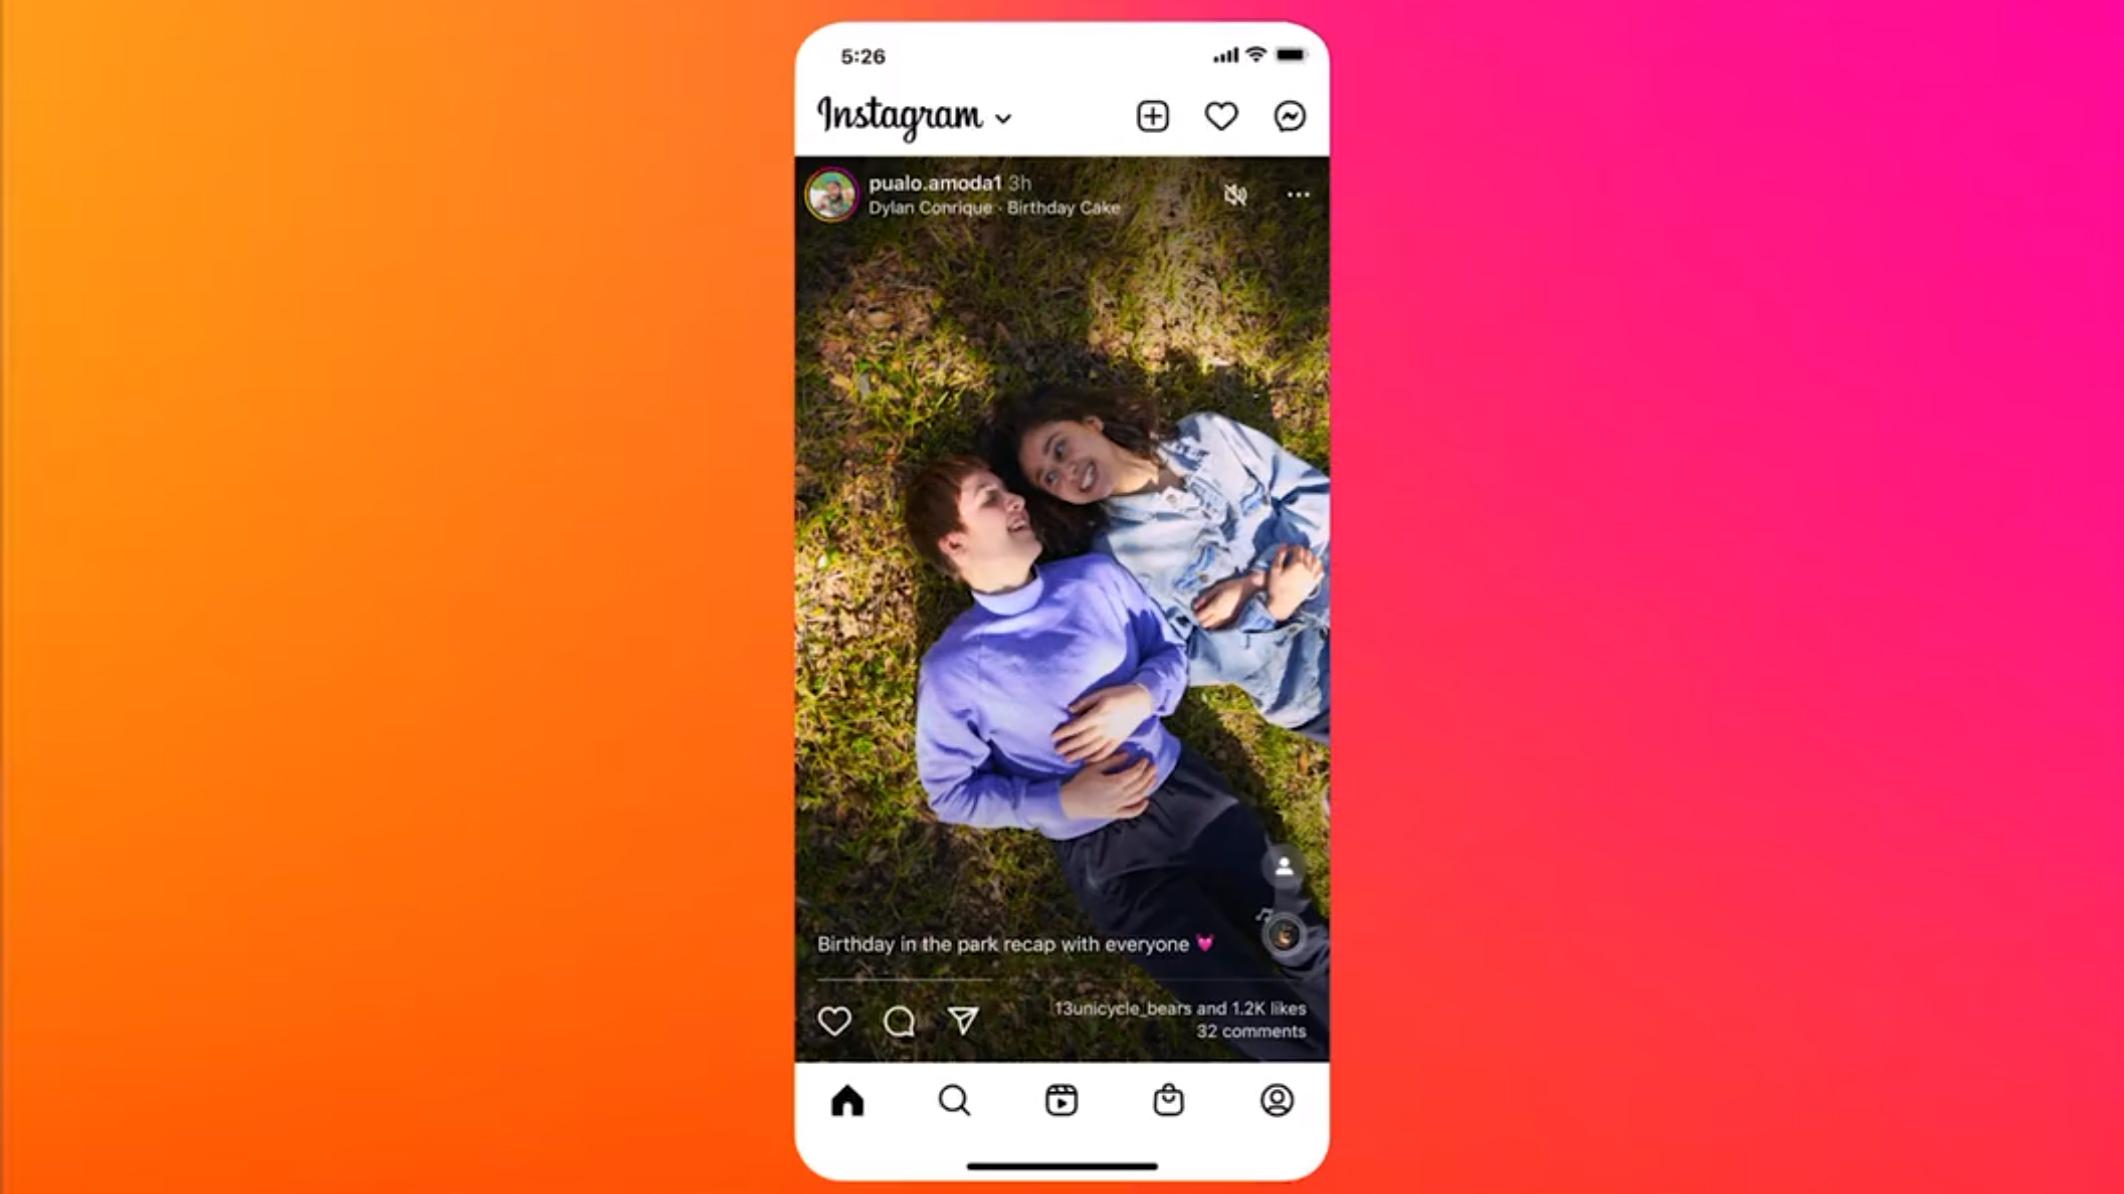 Instagram lanserte i mai sitt nye design - hvor bilder og videoer skulle ta opp hele skjermen på telefonen din. Det gikk de senere tilbake på, etter at misnøyen fra brukerne var stor. Nå skal de likevel teste en mulighet for brukerne til å poste høyere bilder. 